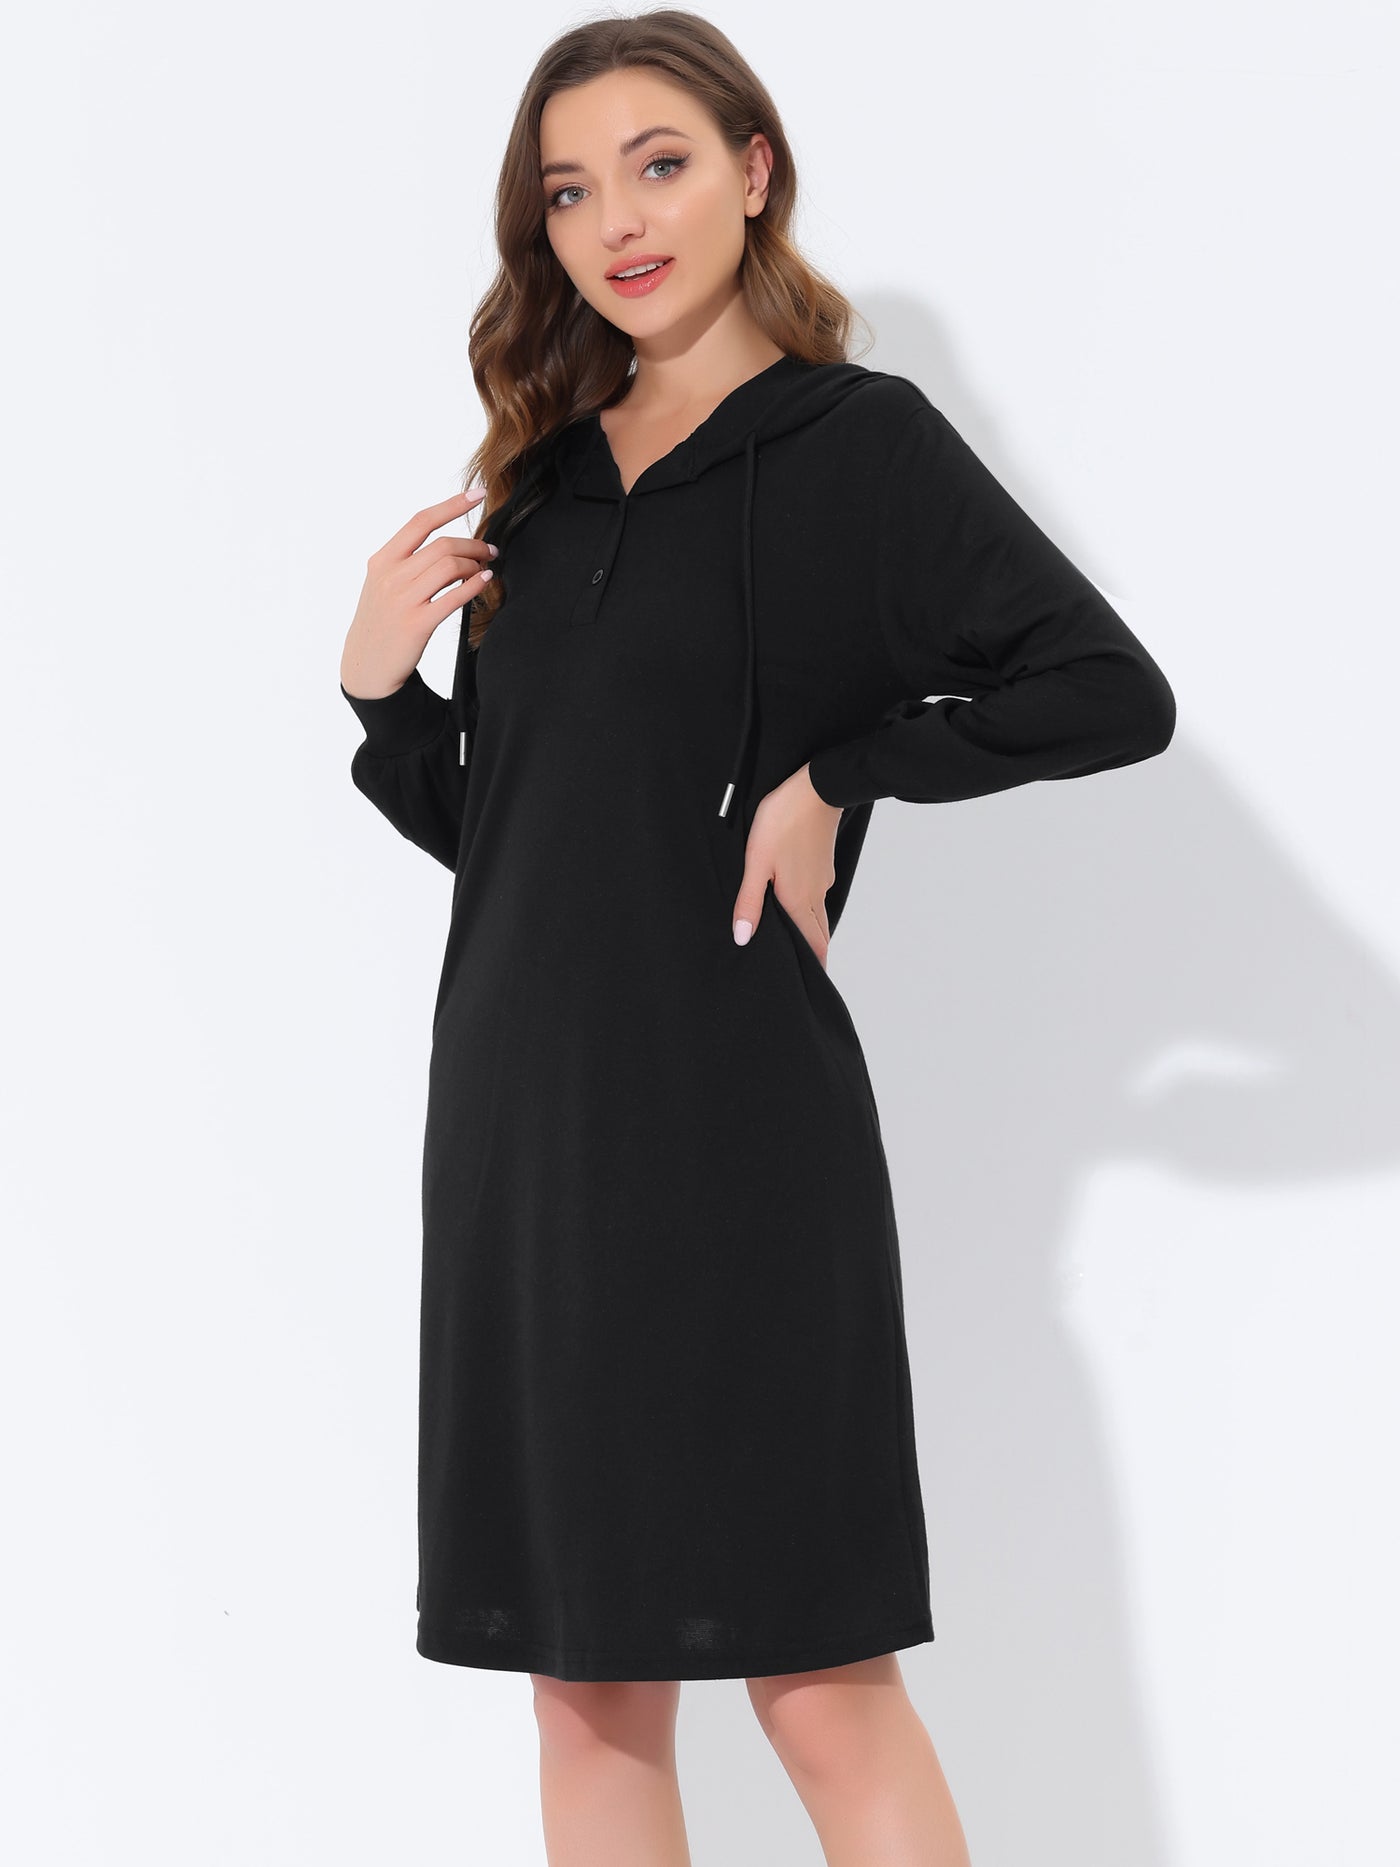 Bublédon Women's Hooded Pockets Dress Lounge Sleepwear Nightgown